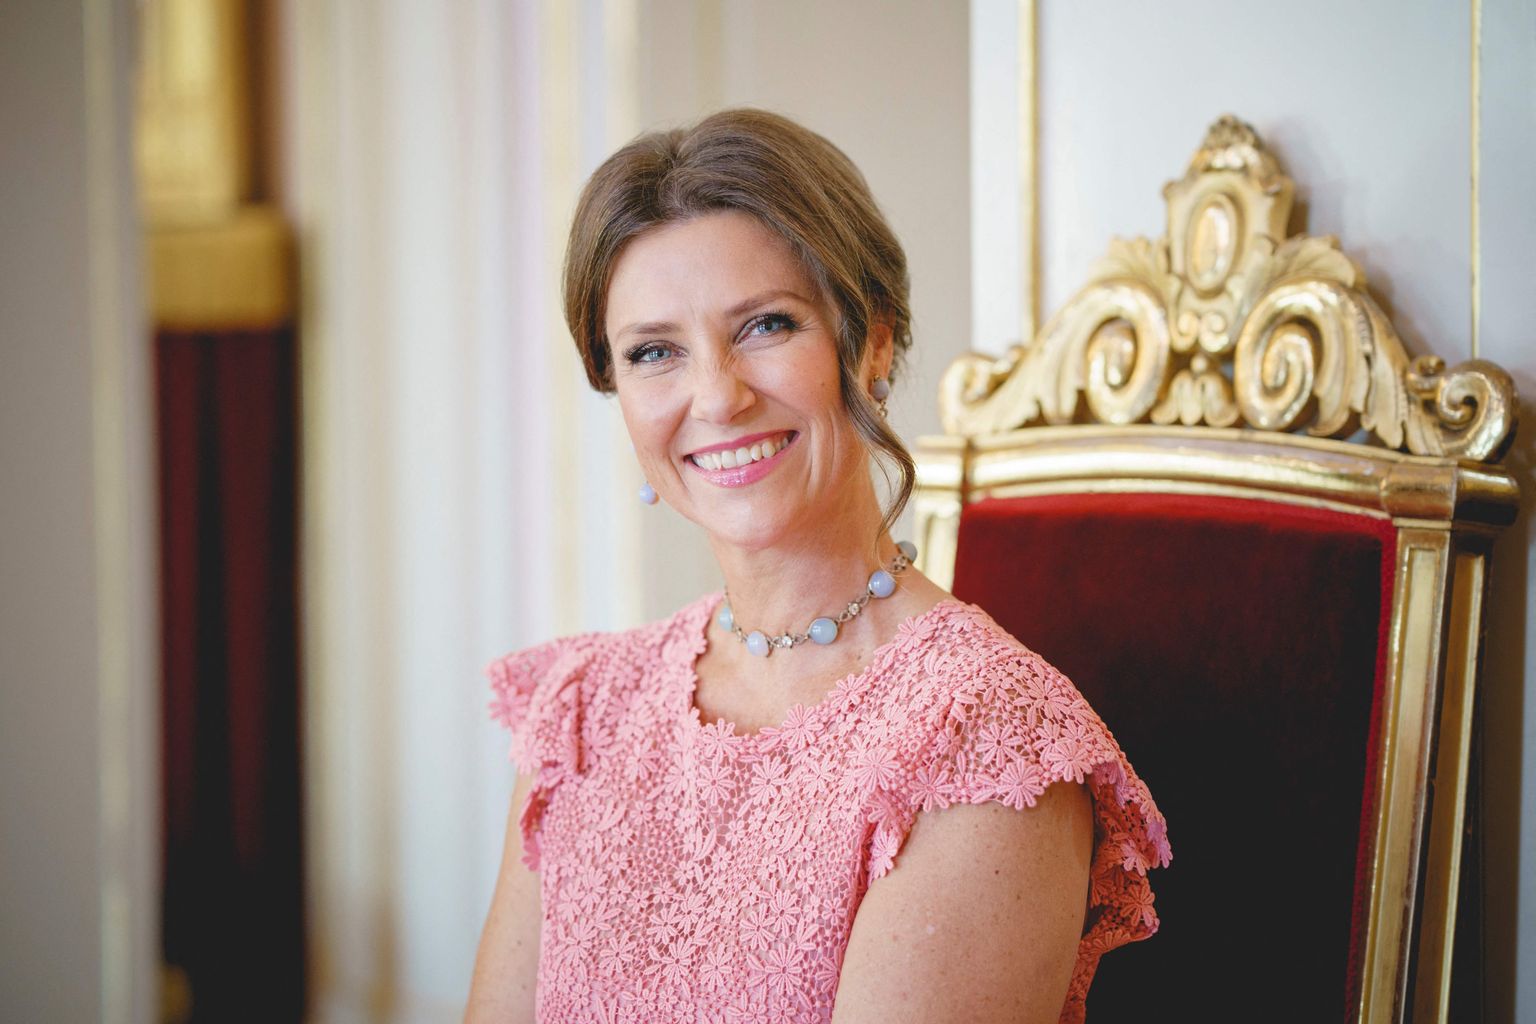 Norra printsess Märtha Louise 21. septembril 2021 poseerimas oma 50. sünnipäeva fotode jaoks